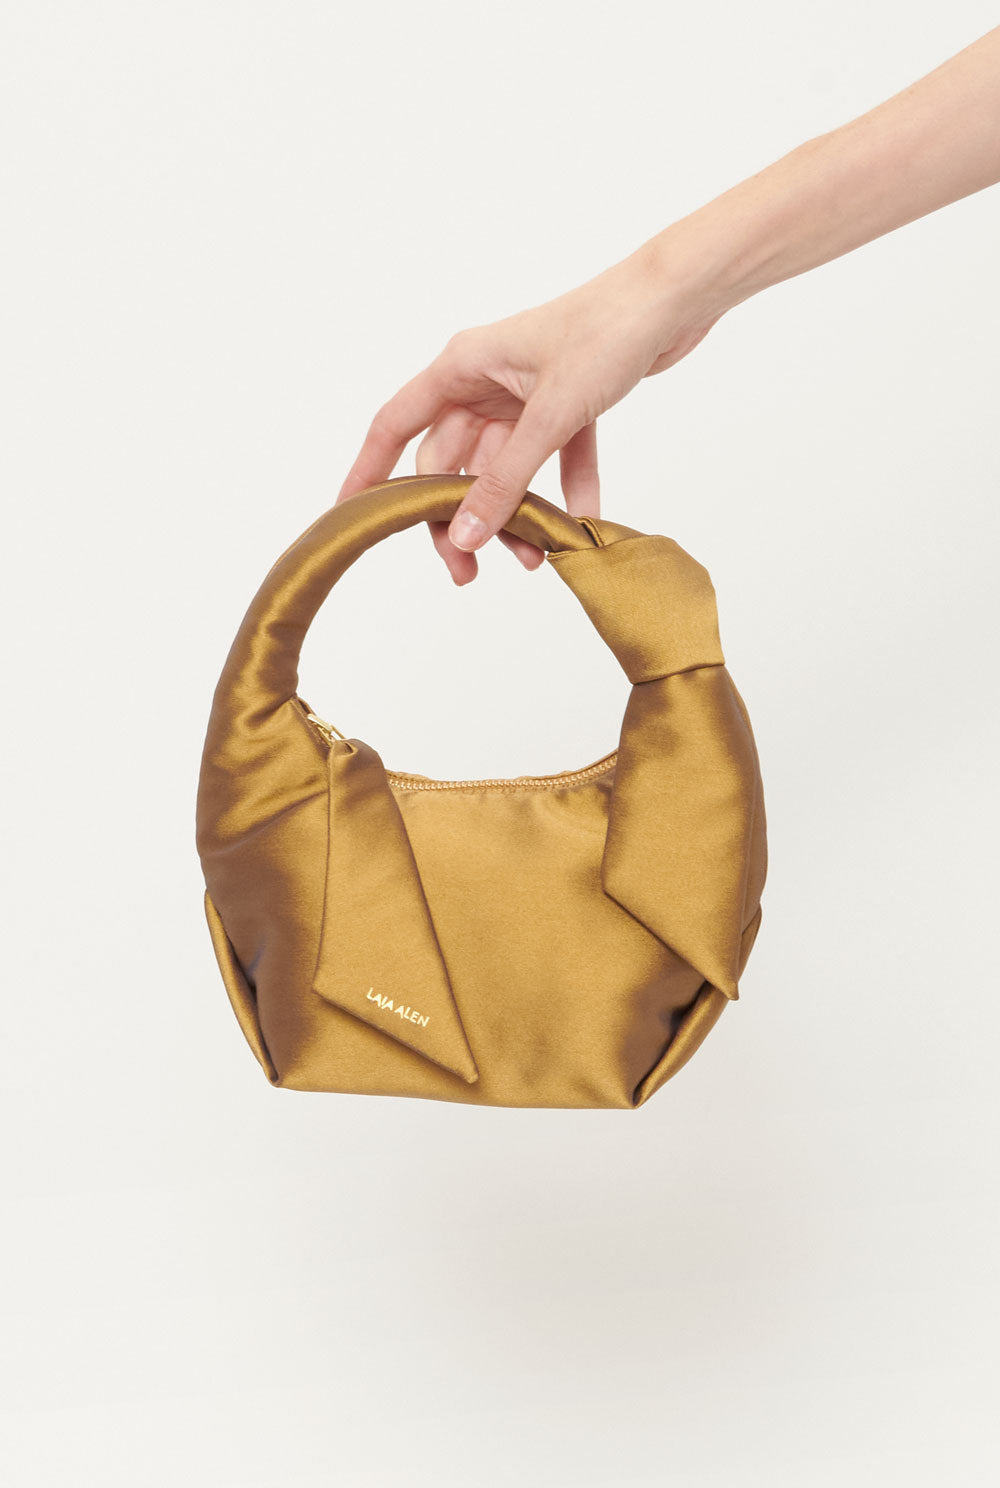 Matti bag gold Mini bags Laia Alen 